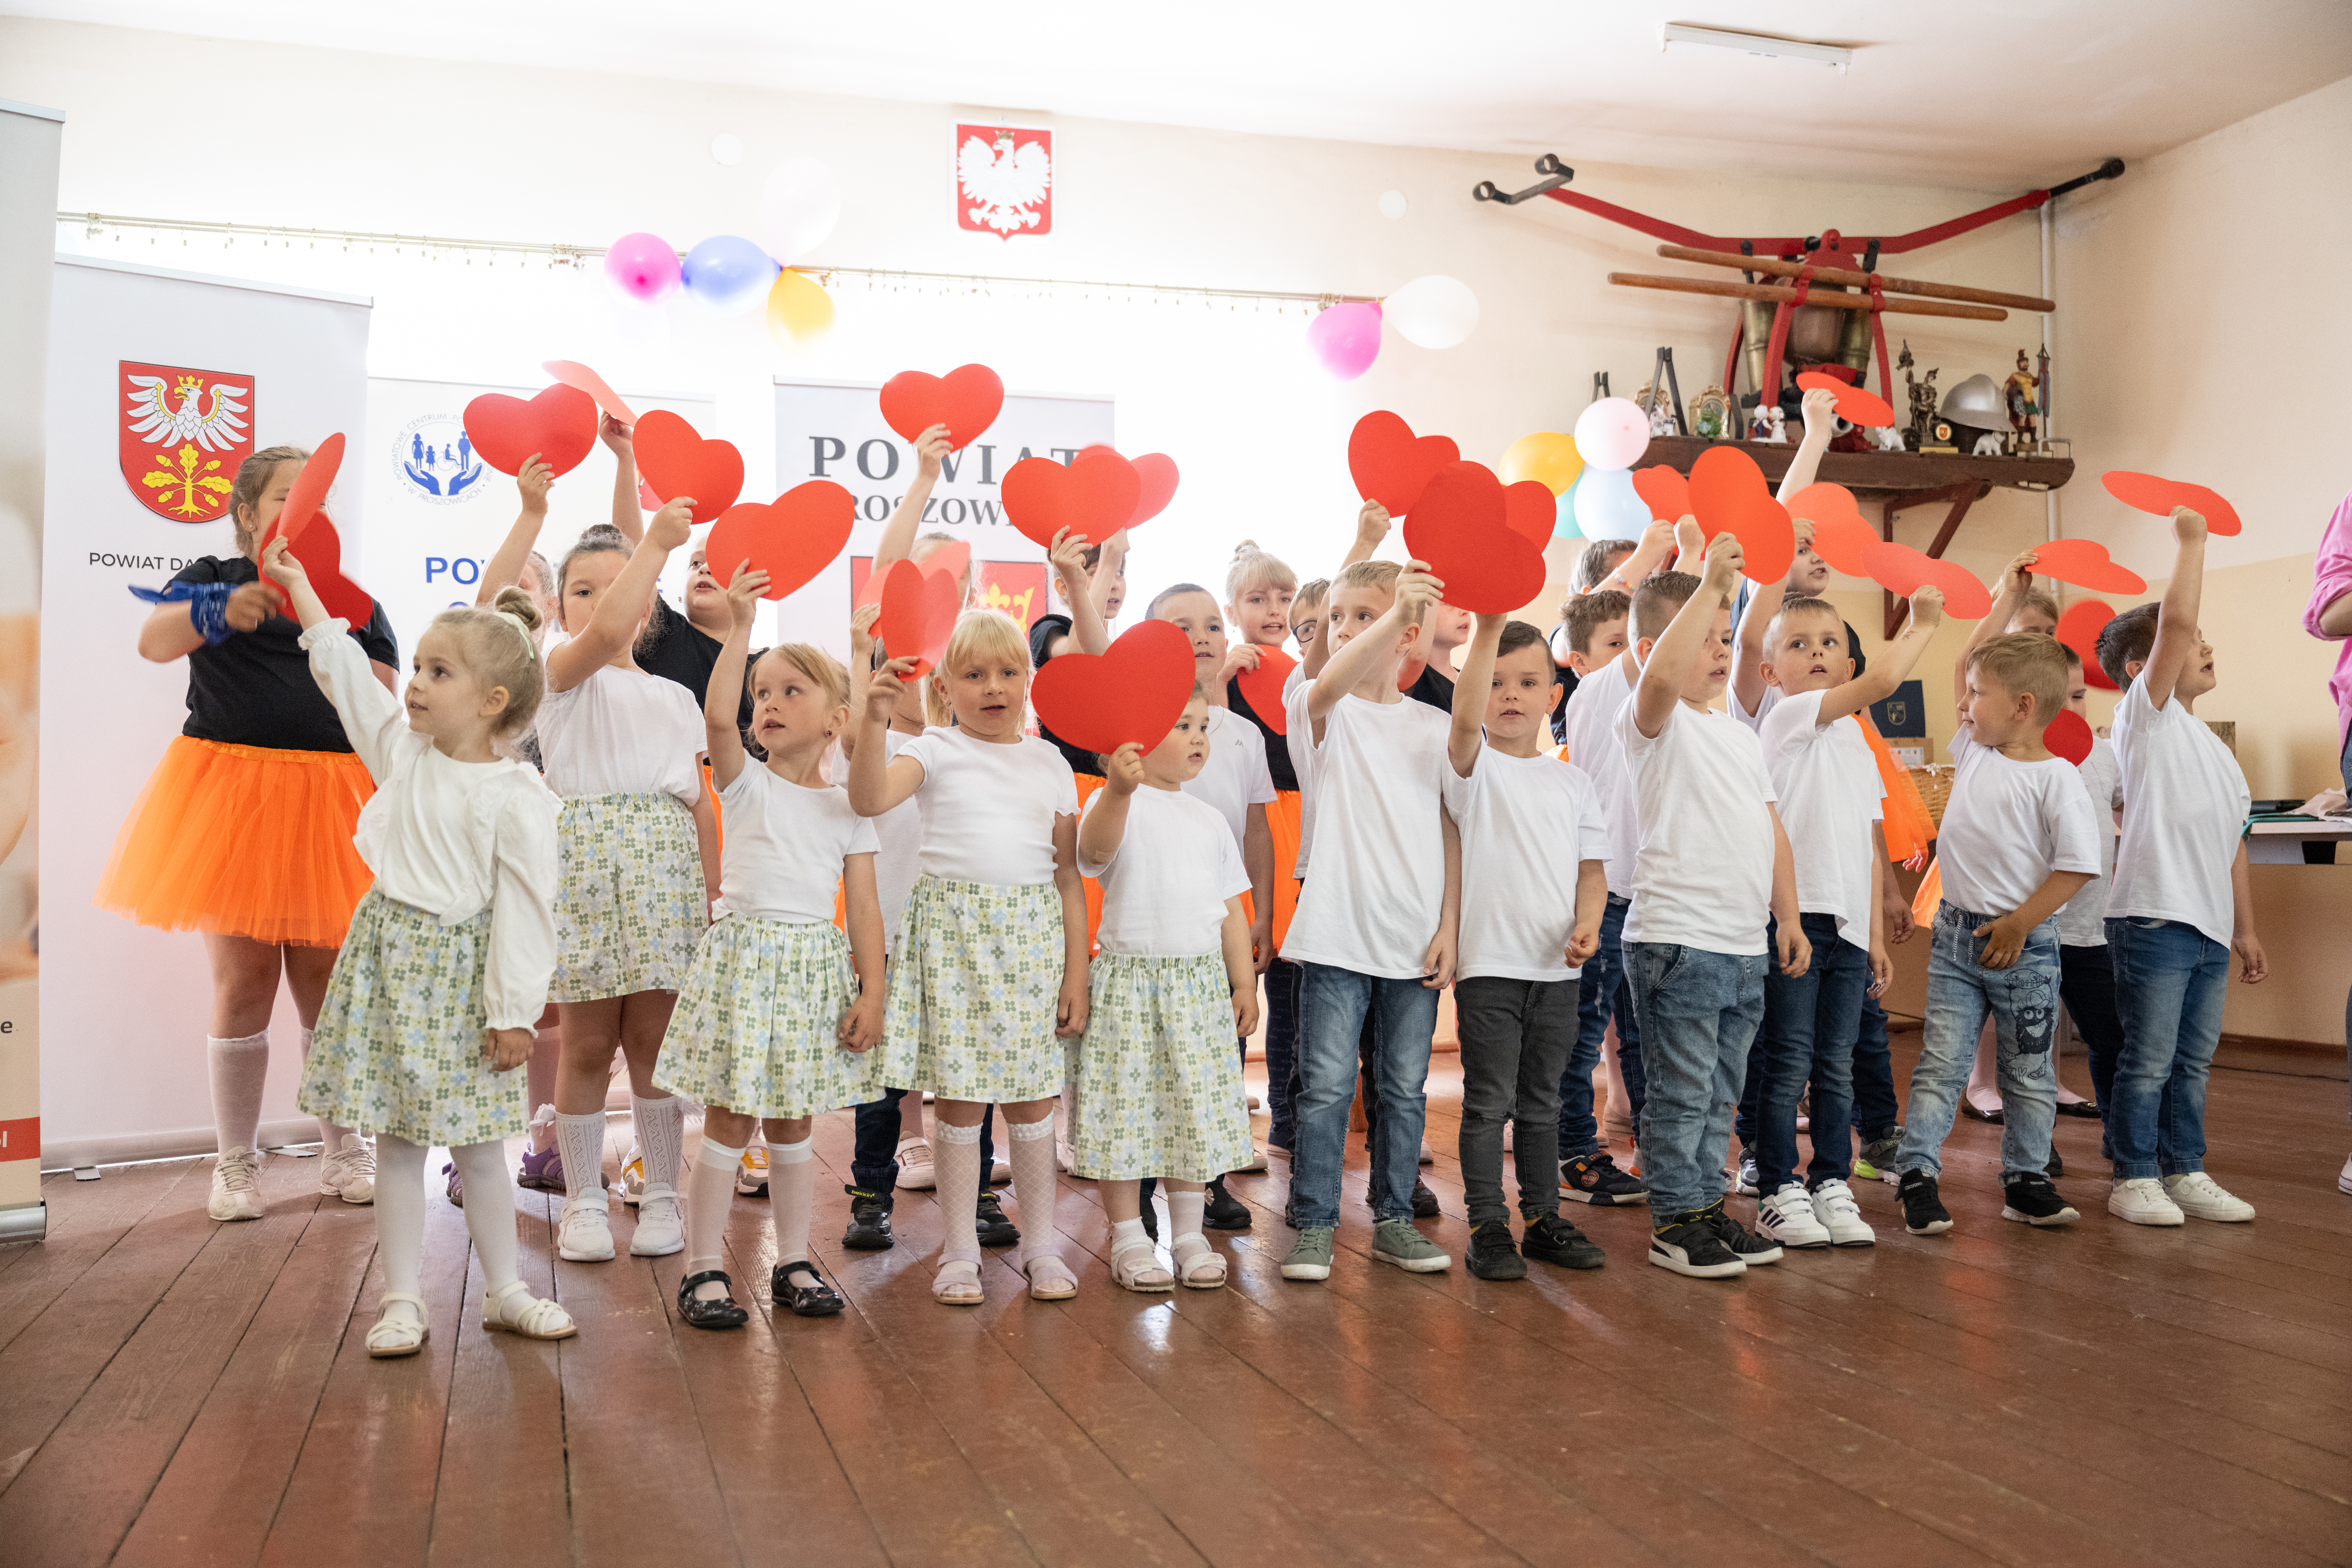 na scenie grupa dzieci chłopców i dziewczynek w wieku przedszkolnym i szkolnym, dzieci trzymają nad głowami papierowe serca w kolorze czerwonym